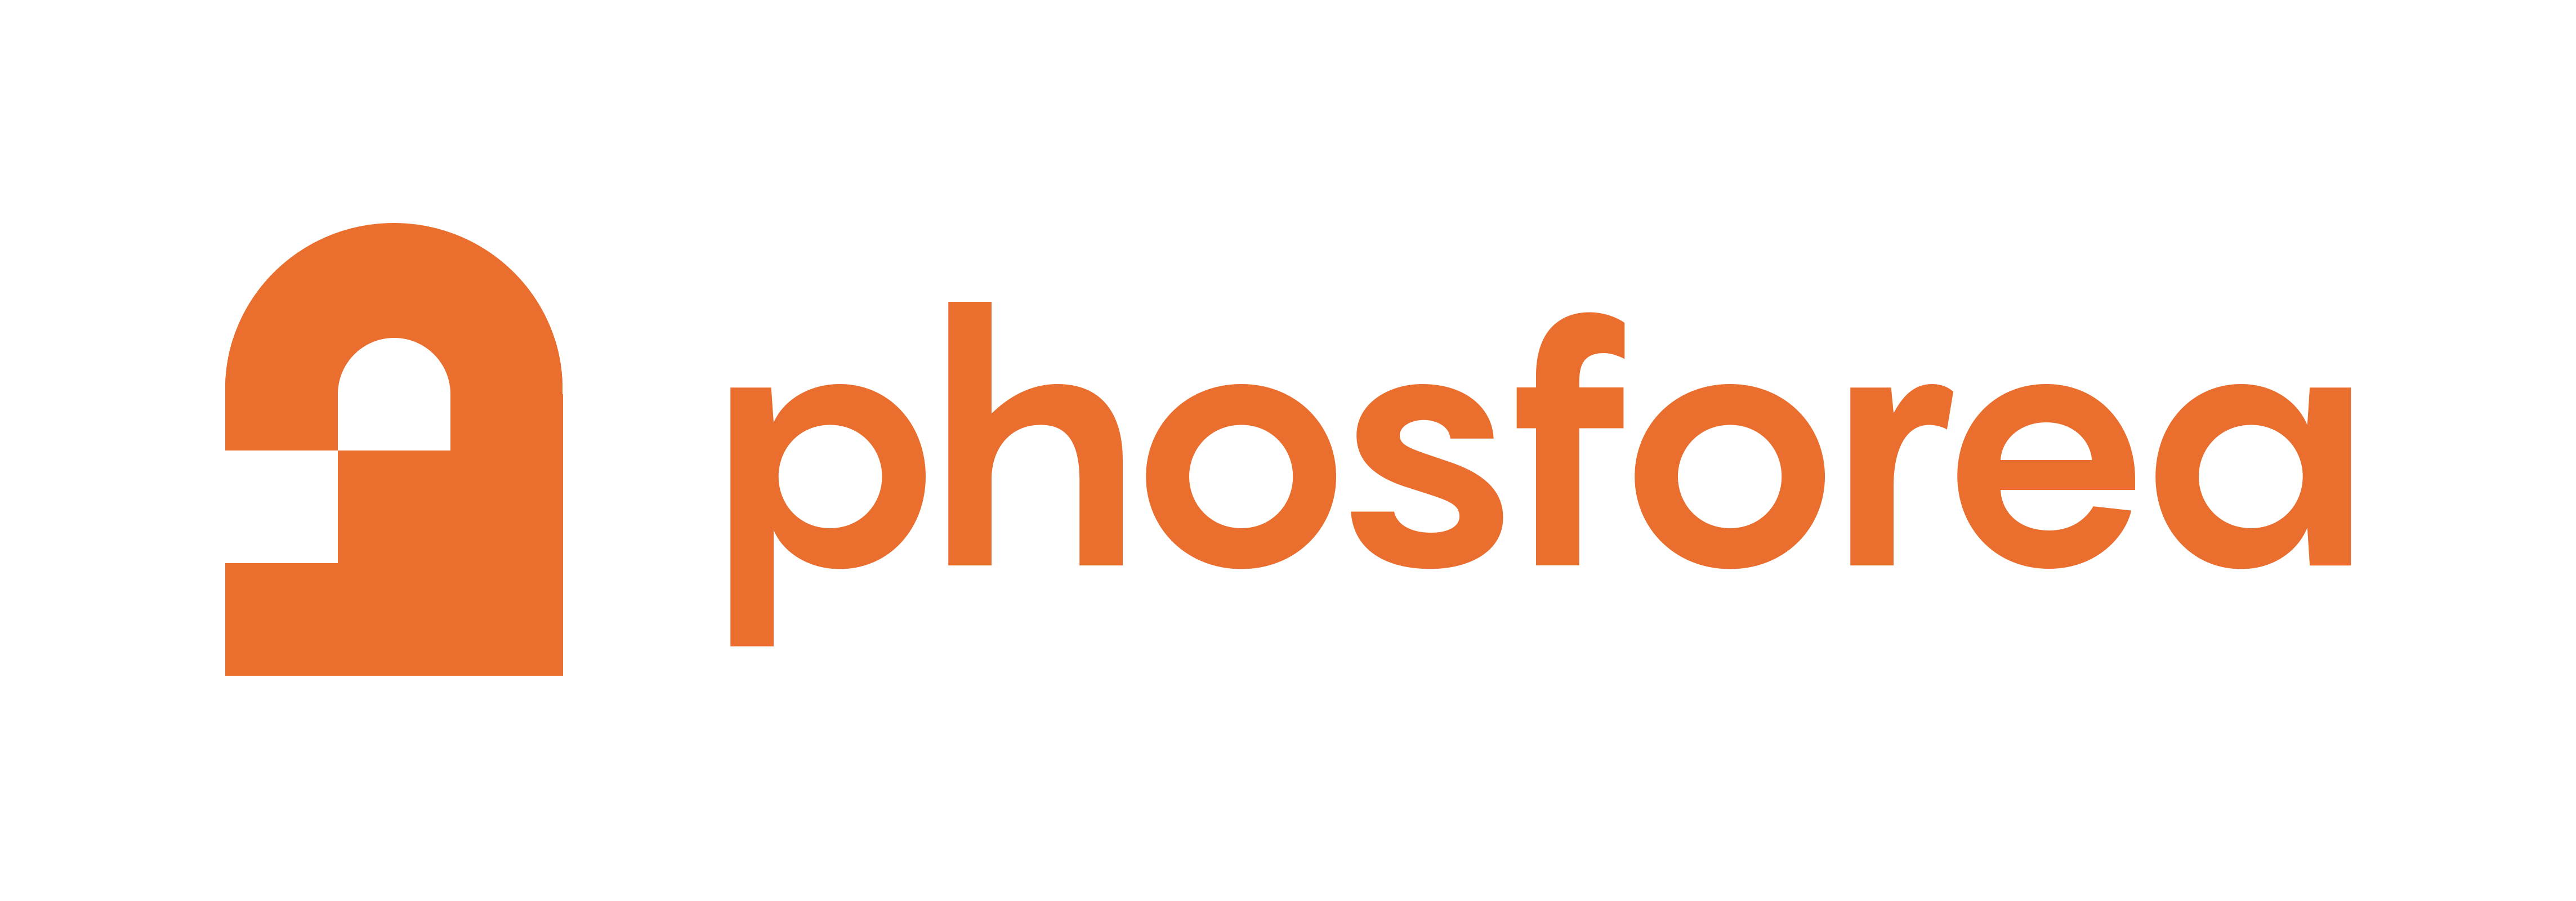 phosforea